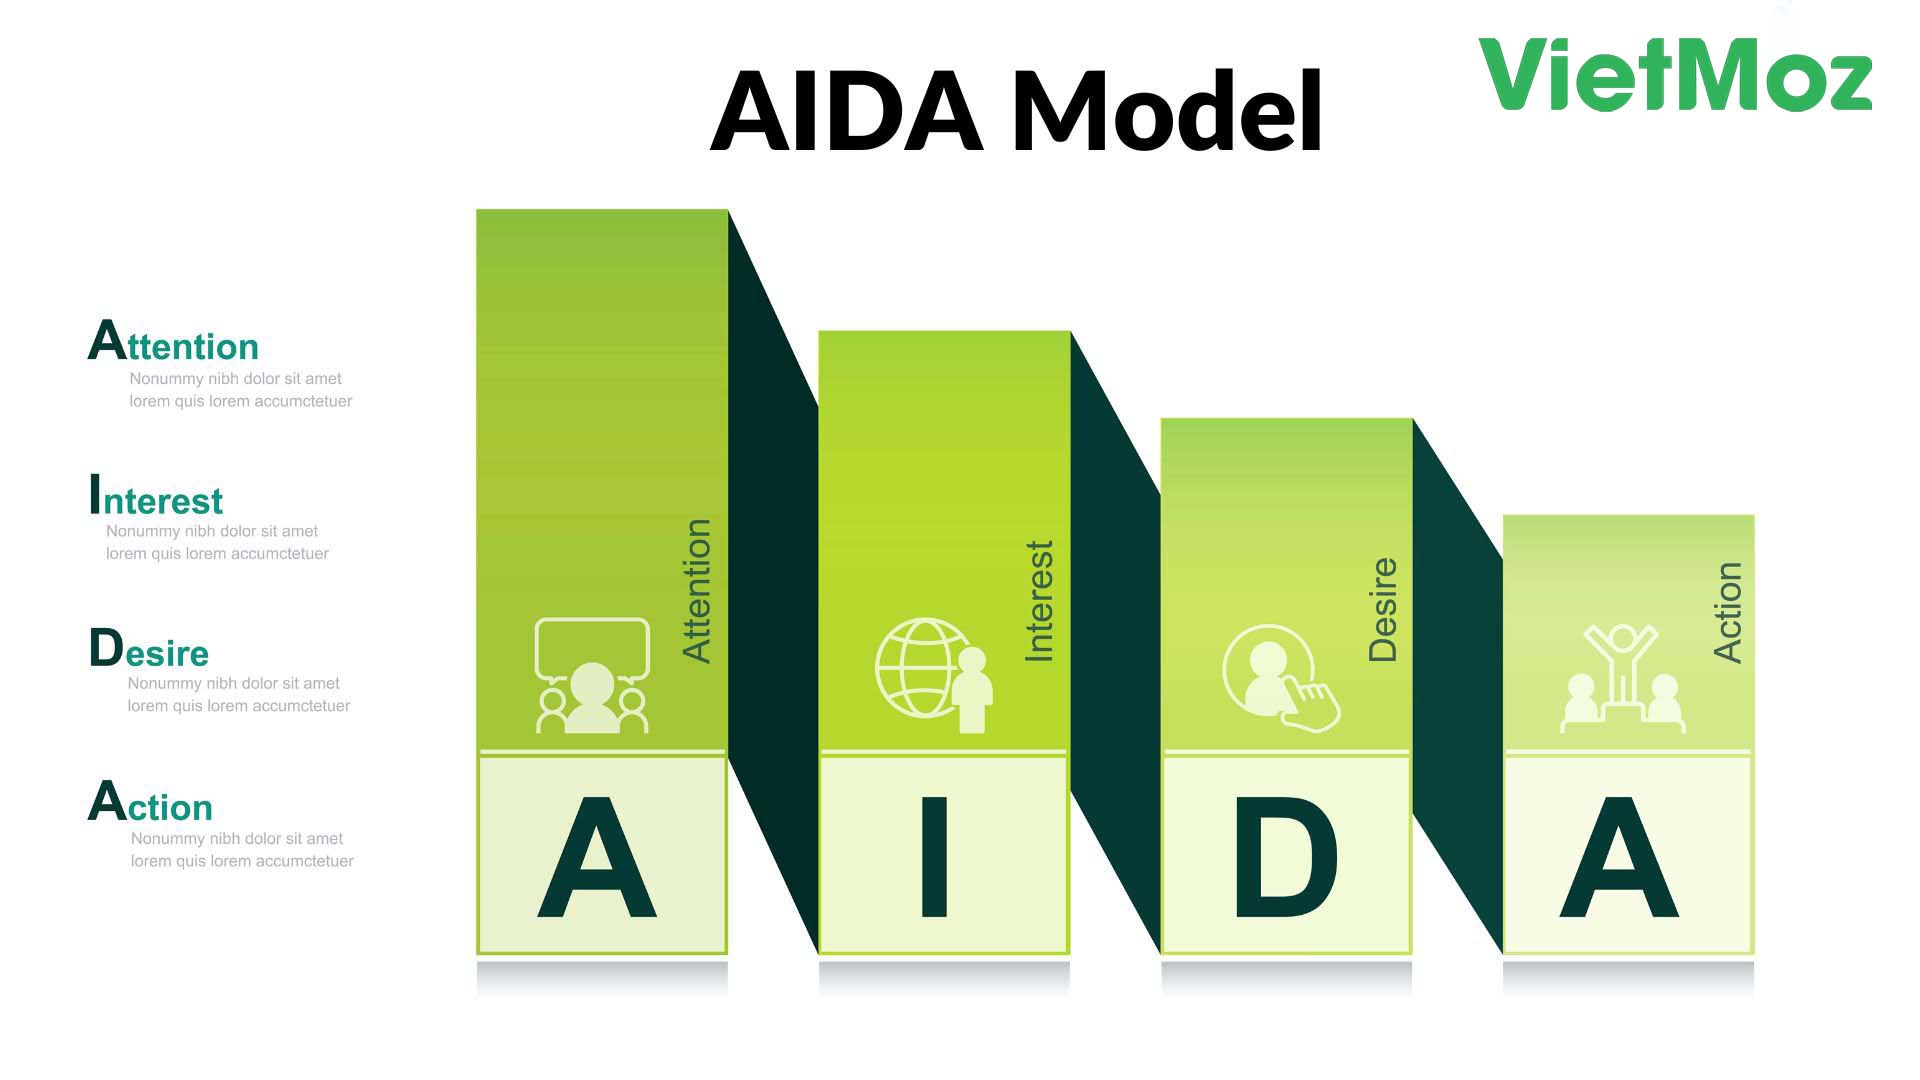 VietMoz - Cách sử dụng mô hình AIDA trong SEO